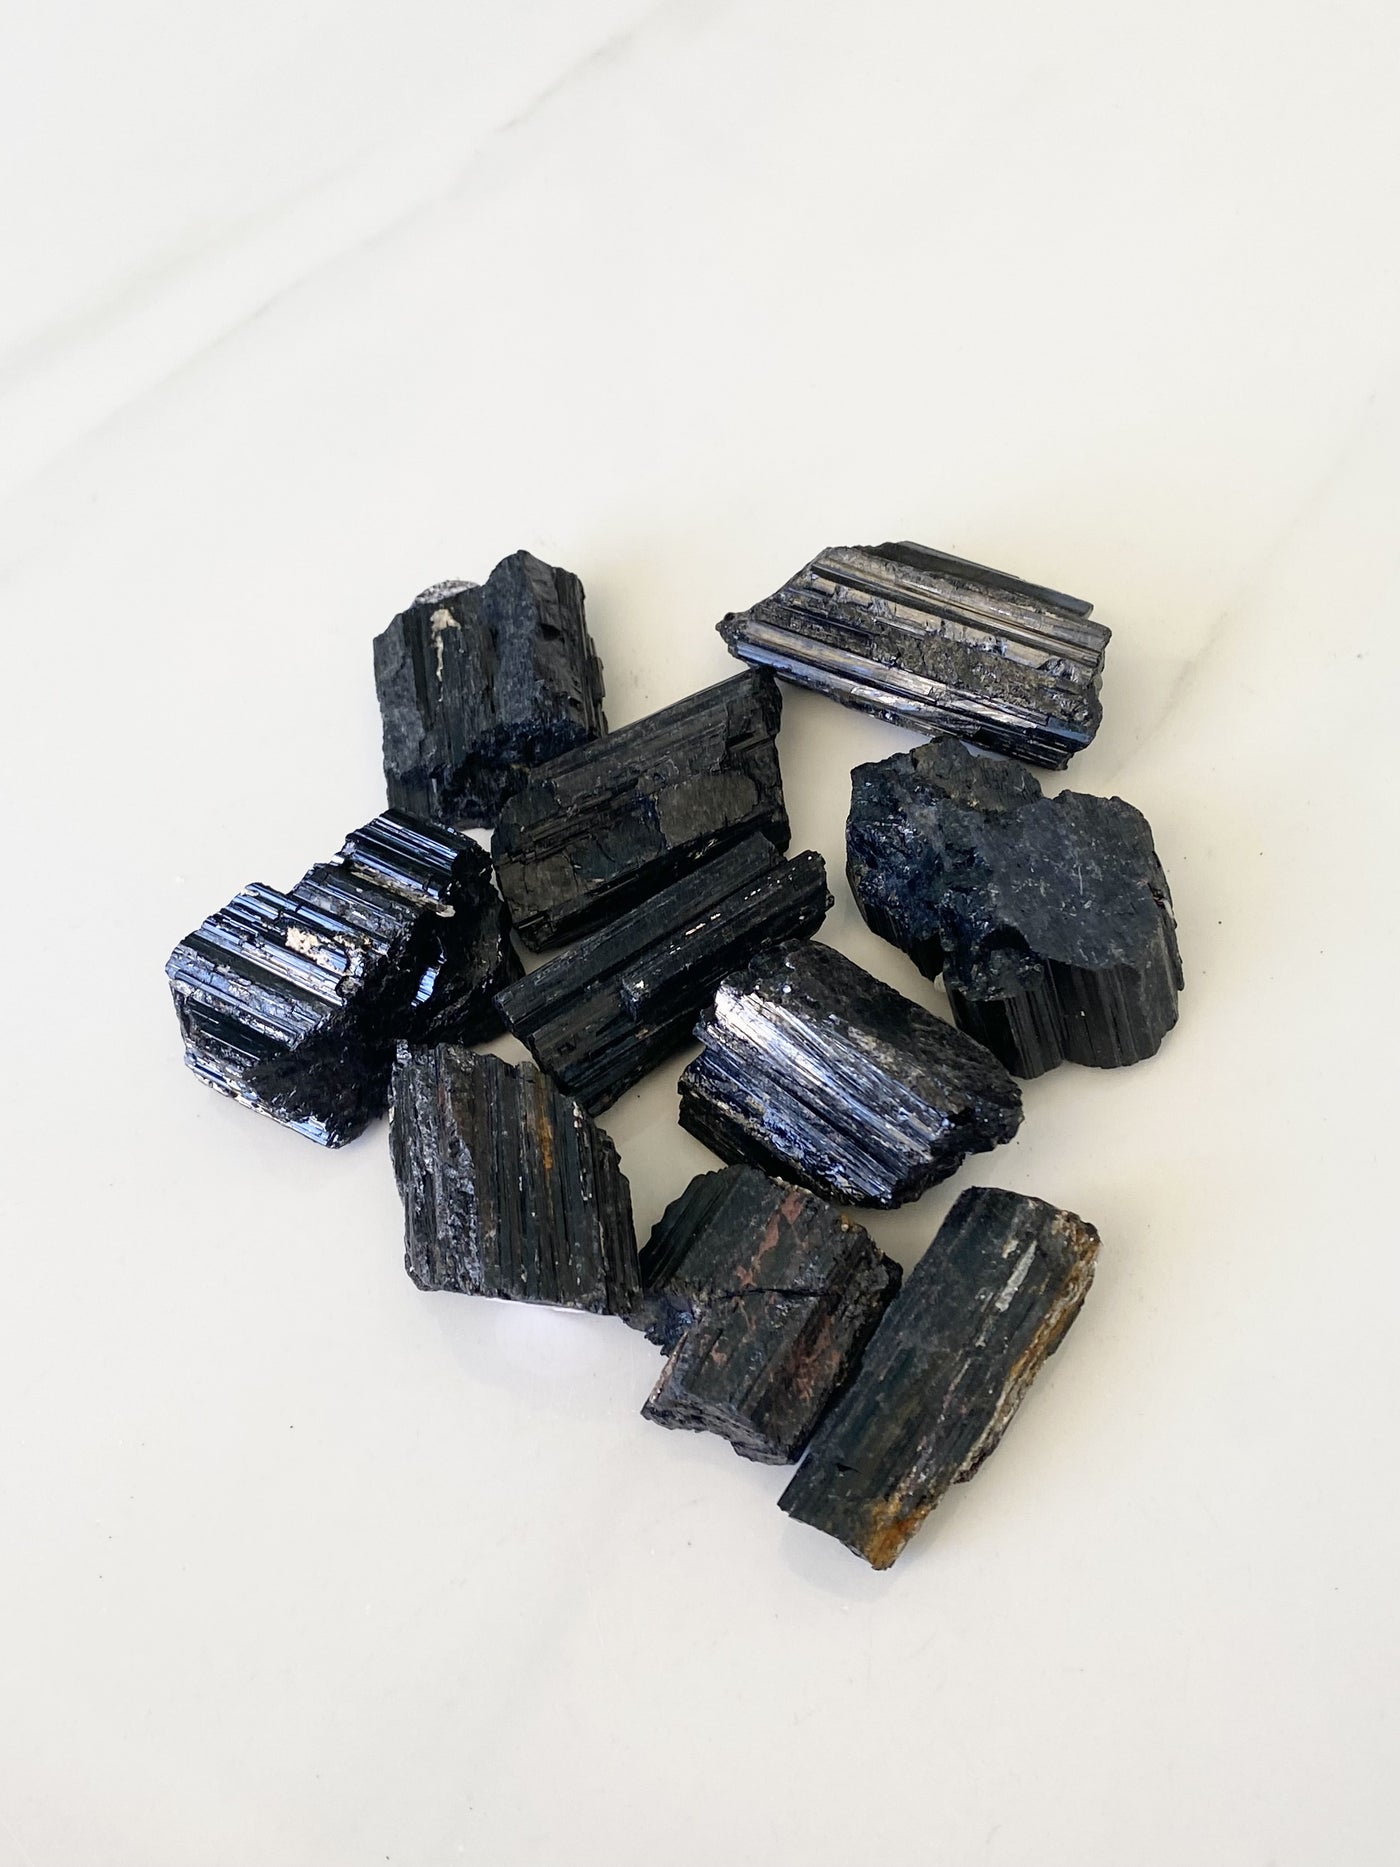 Black Tourmaline Medium Chunks